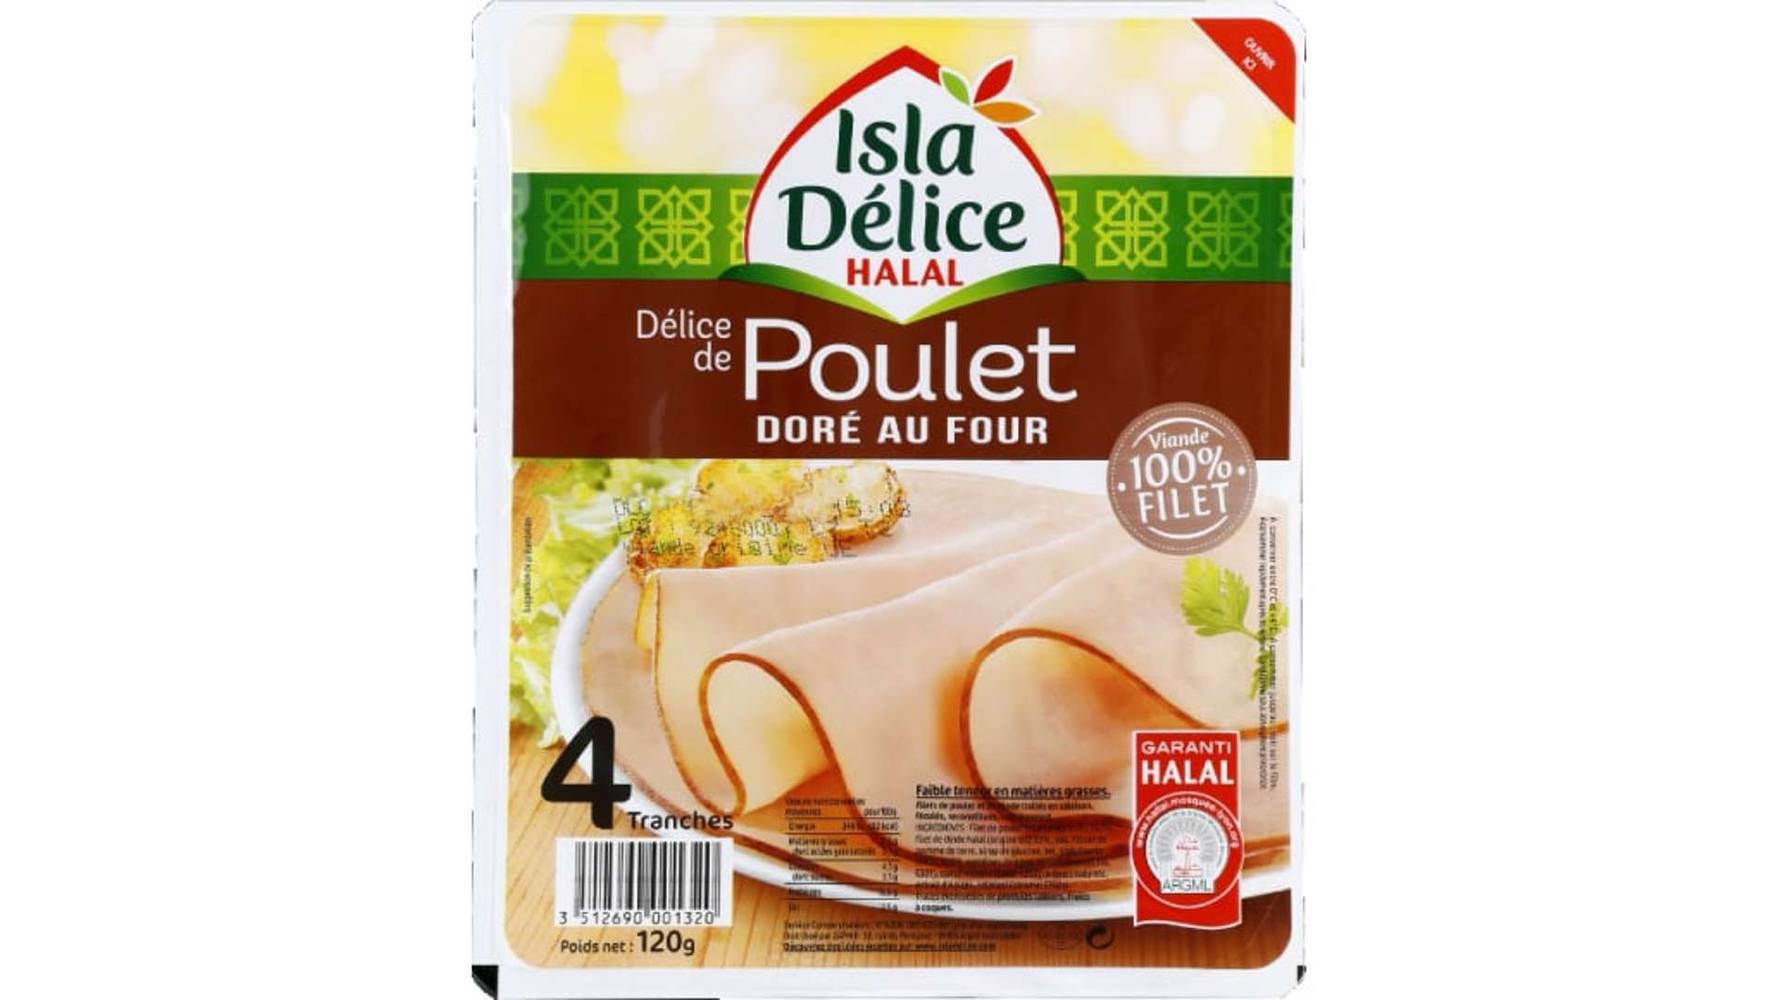 Isla Délice - Blanc de poulet doré au four halal (4 pièces)